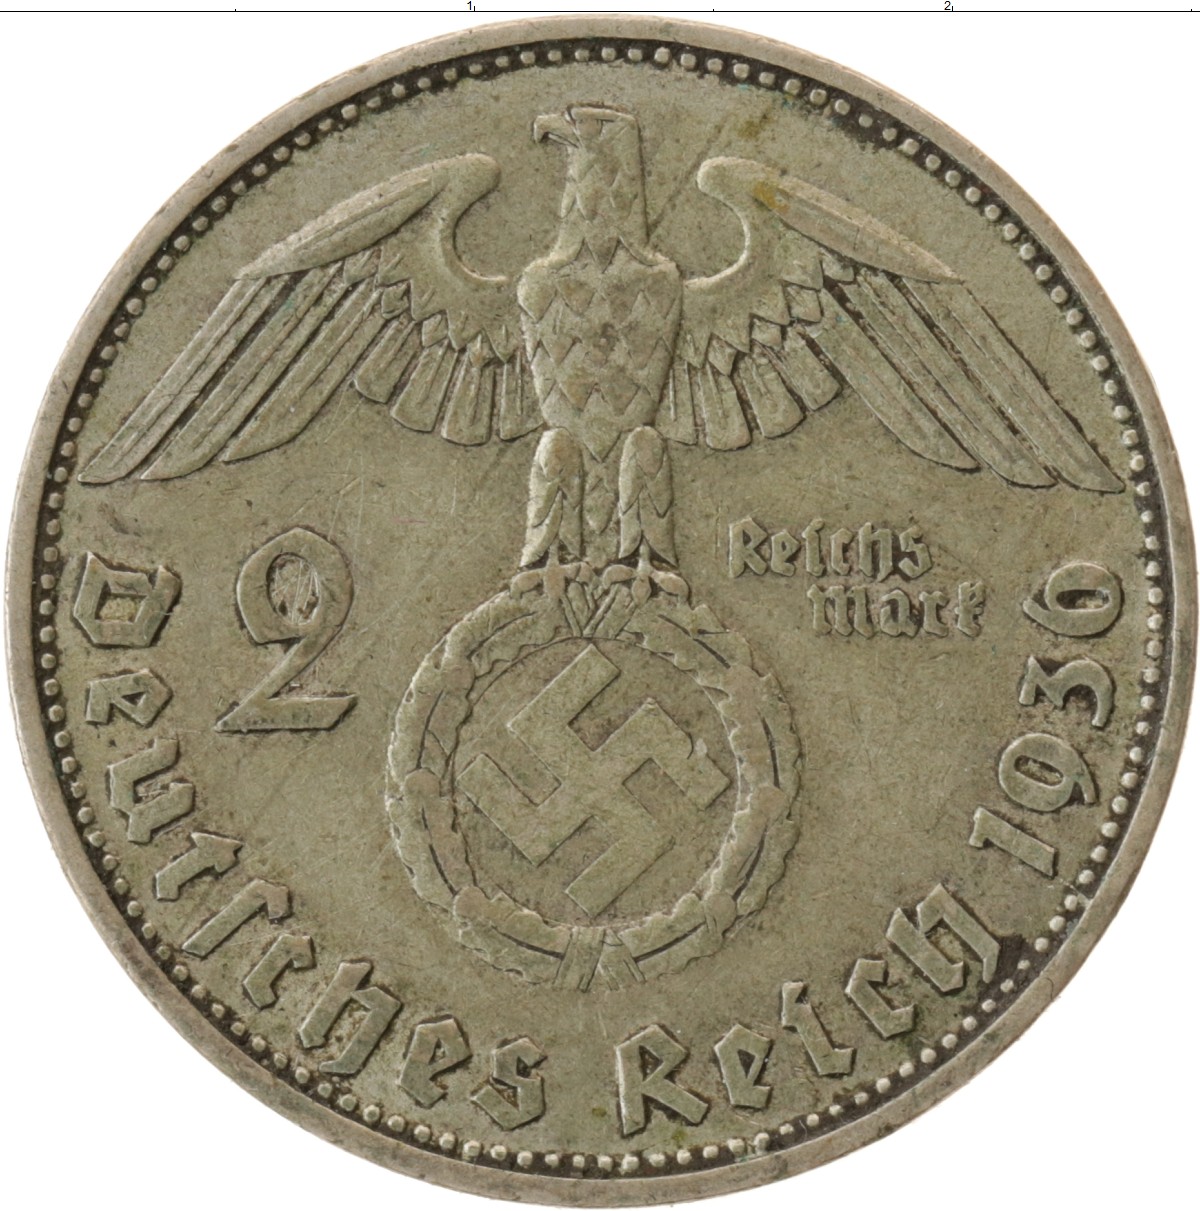 Деньги второй мировой войны. Монеты 3 рейха 5 рейхсмарок 1936-1939. 5 Рейхсмарок 1939. Третий Рейх 2 рейхсмарки. Монета 3 рейха 1939.